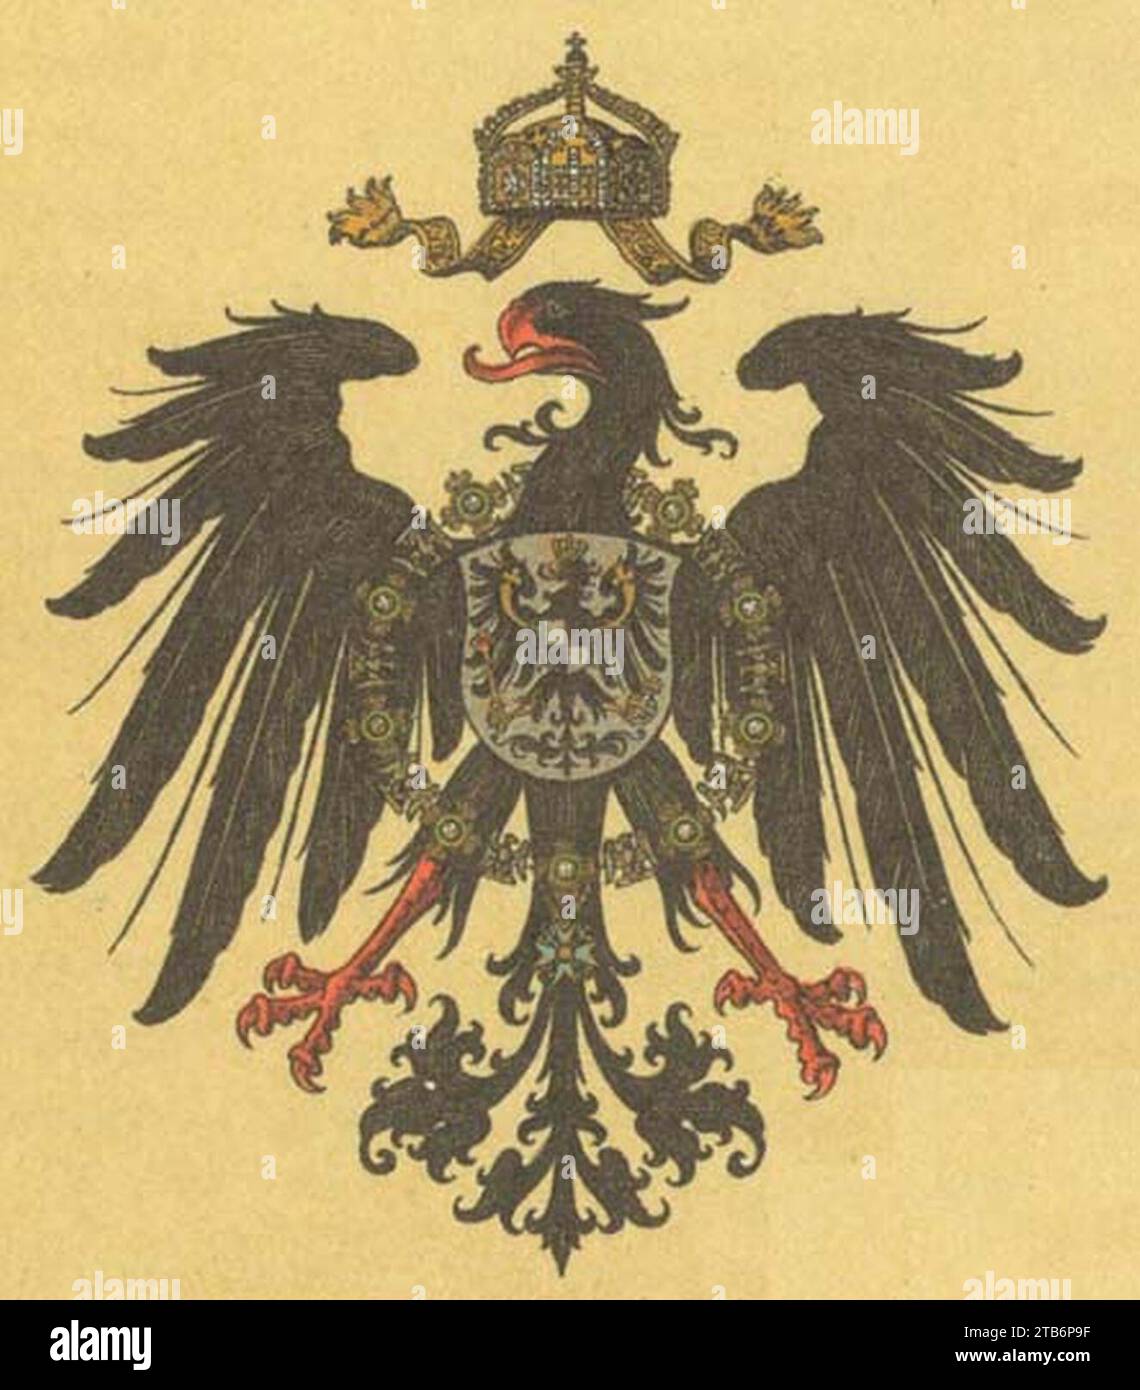 Wappen Deutsches Reich - Reichswappen (Klein). Stock Photo